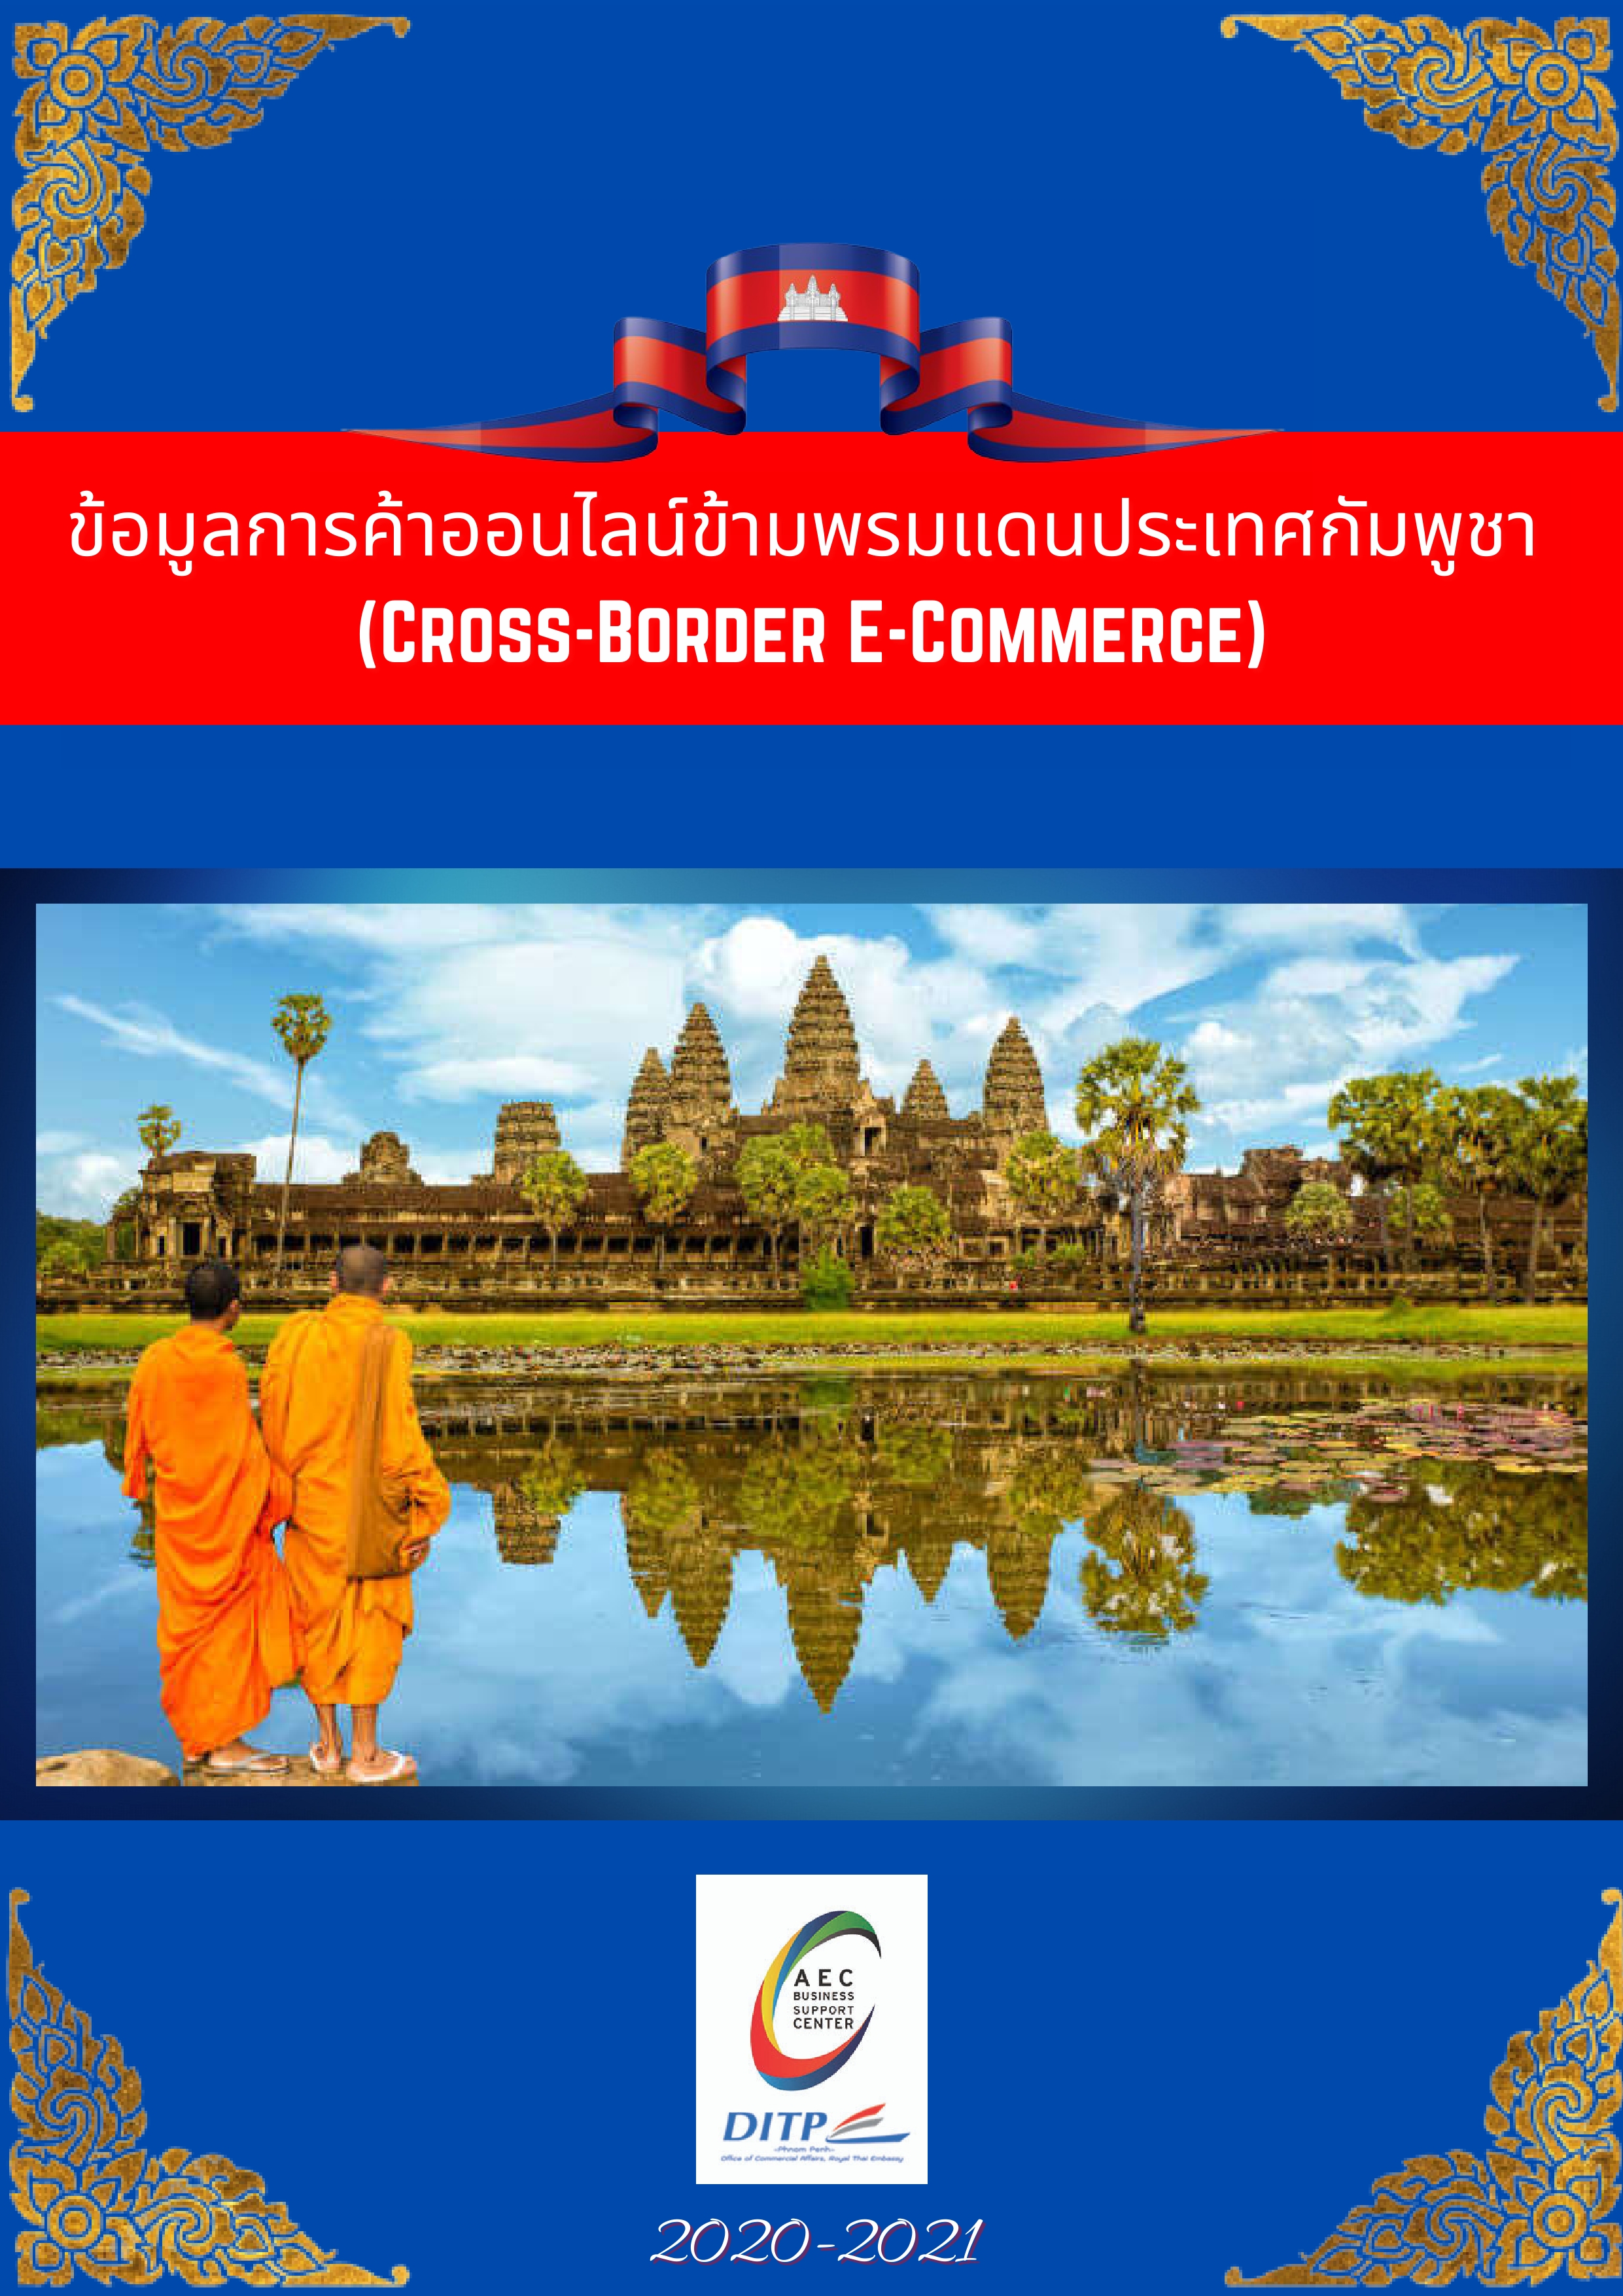 ข้อมูลการค้าออนไลน์ข้ามพรมแดนประเทศกัมพูชา (Cross-Border E-Commerce)